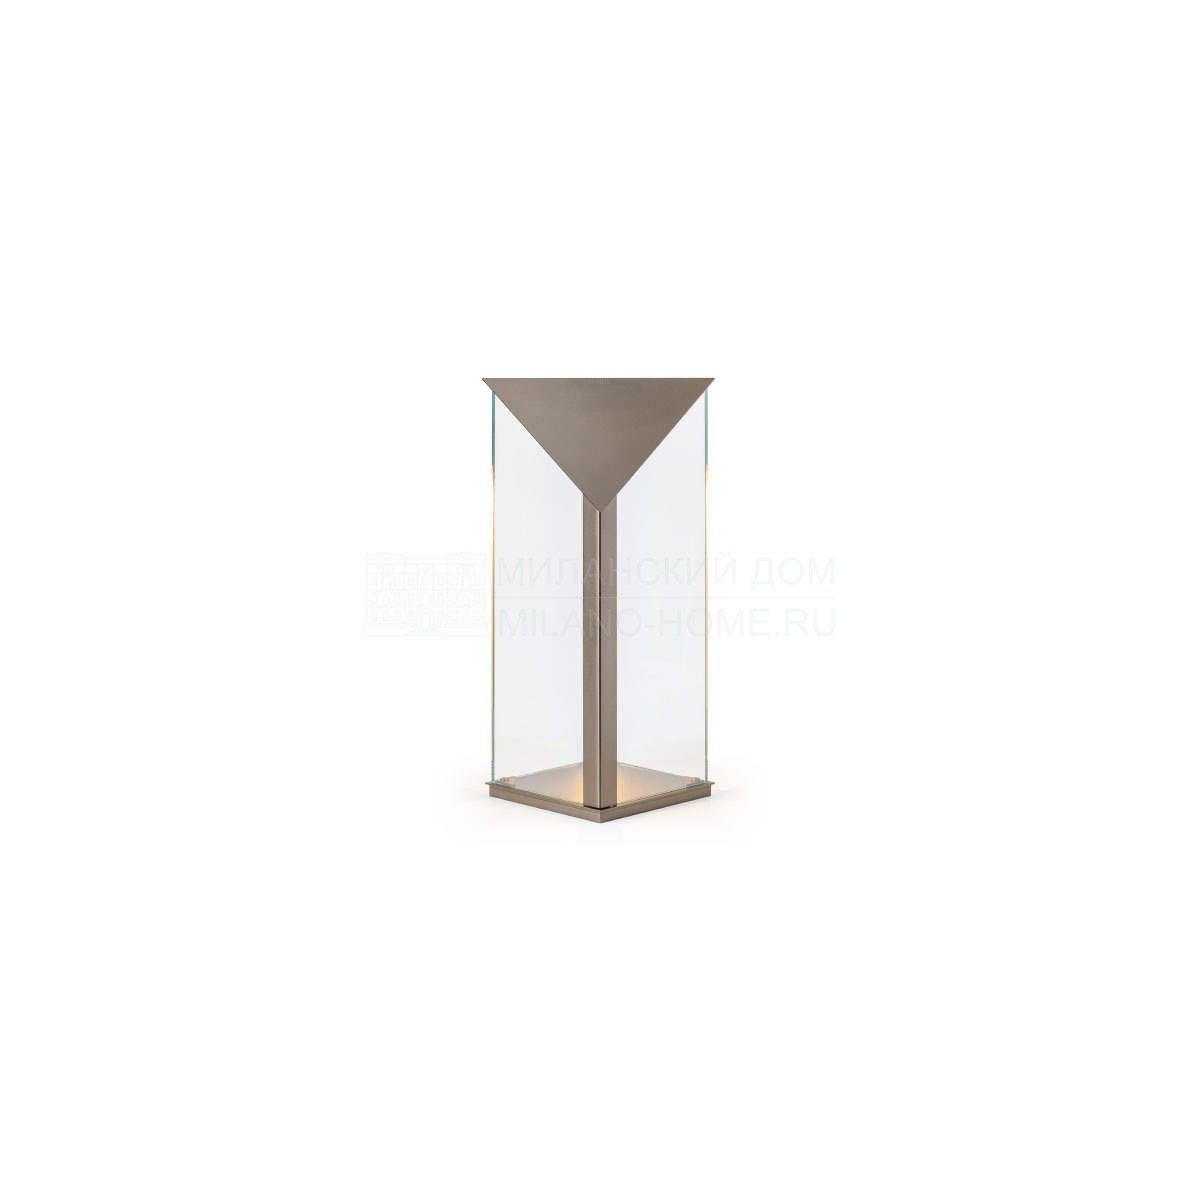 Настольная лампа Zero table lamp из Италии фабрики TURRI